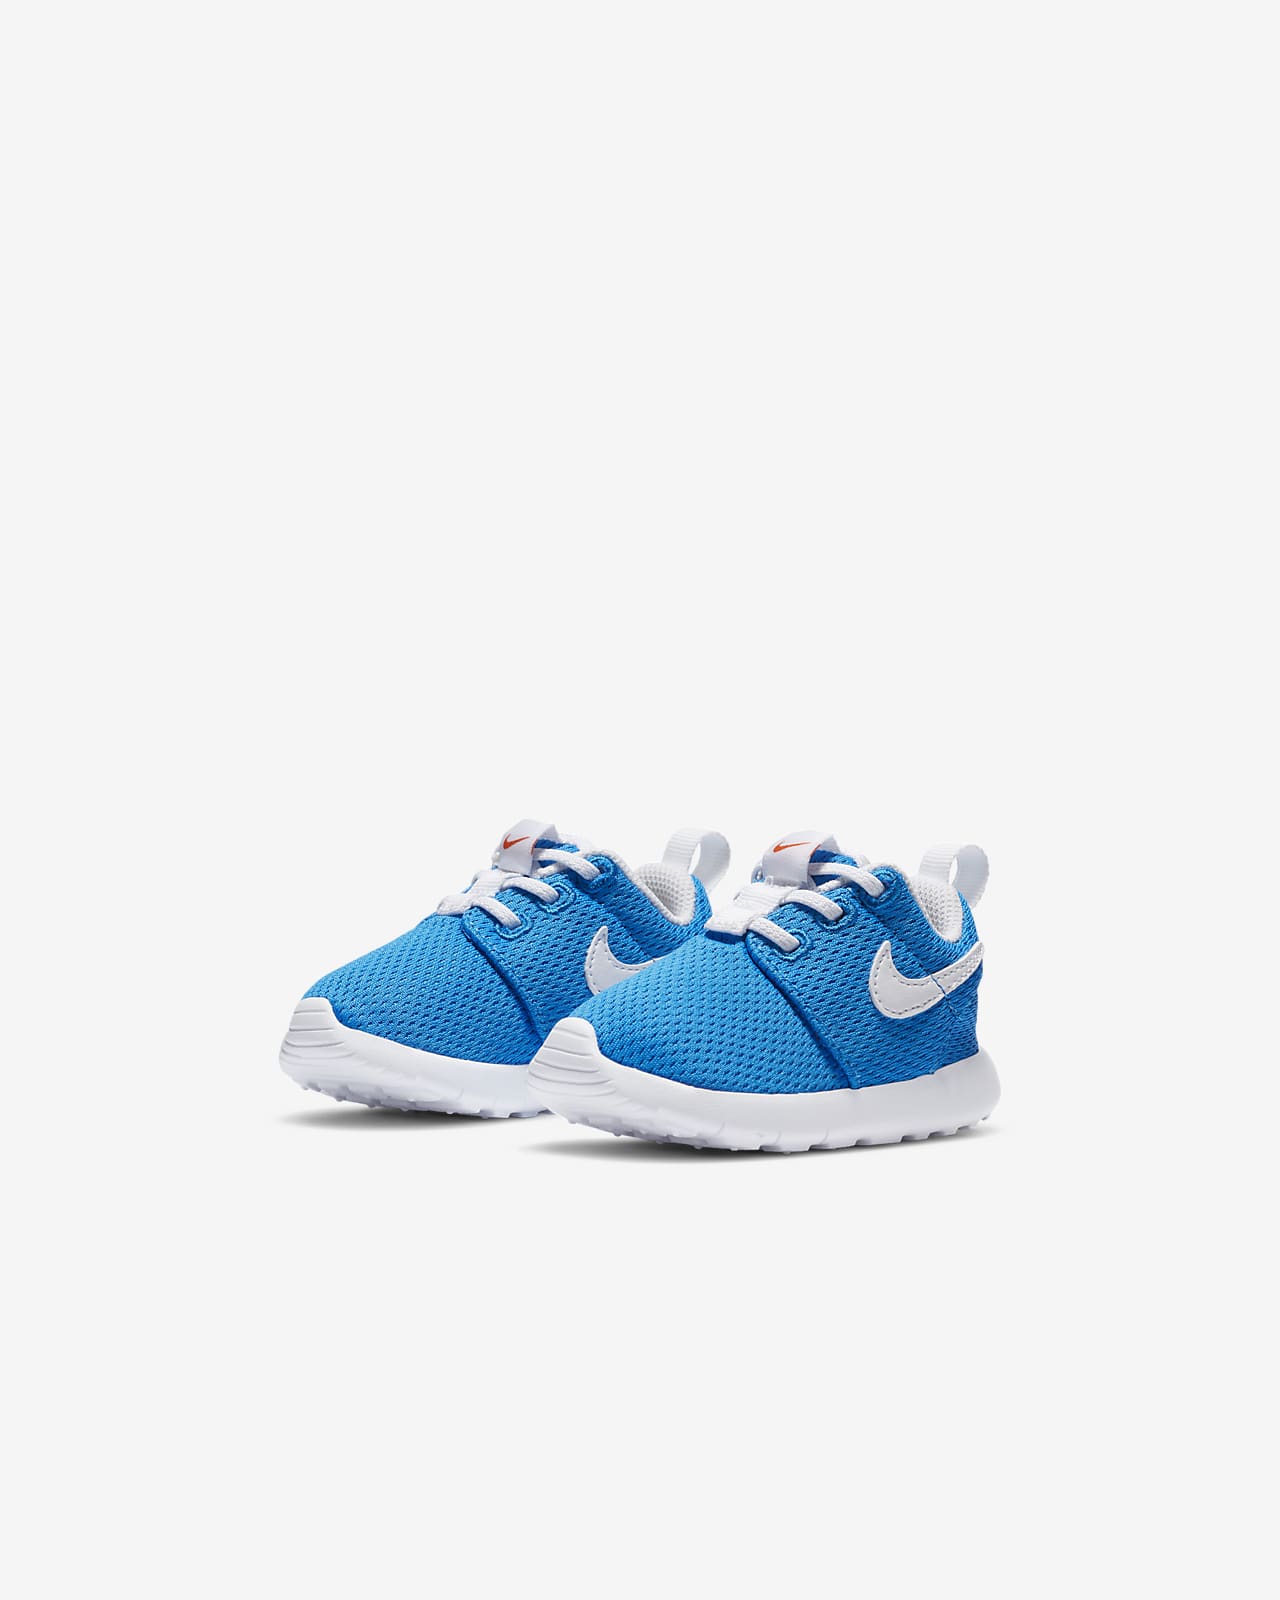 Nike Roshe One Infant/Toddler Shoe 